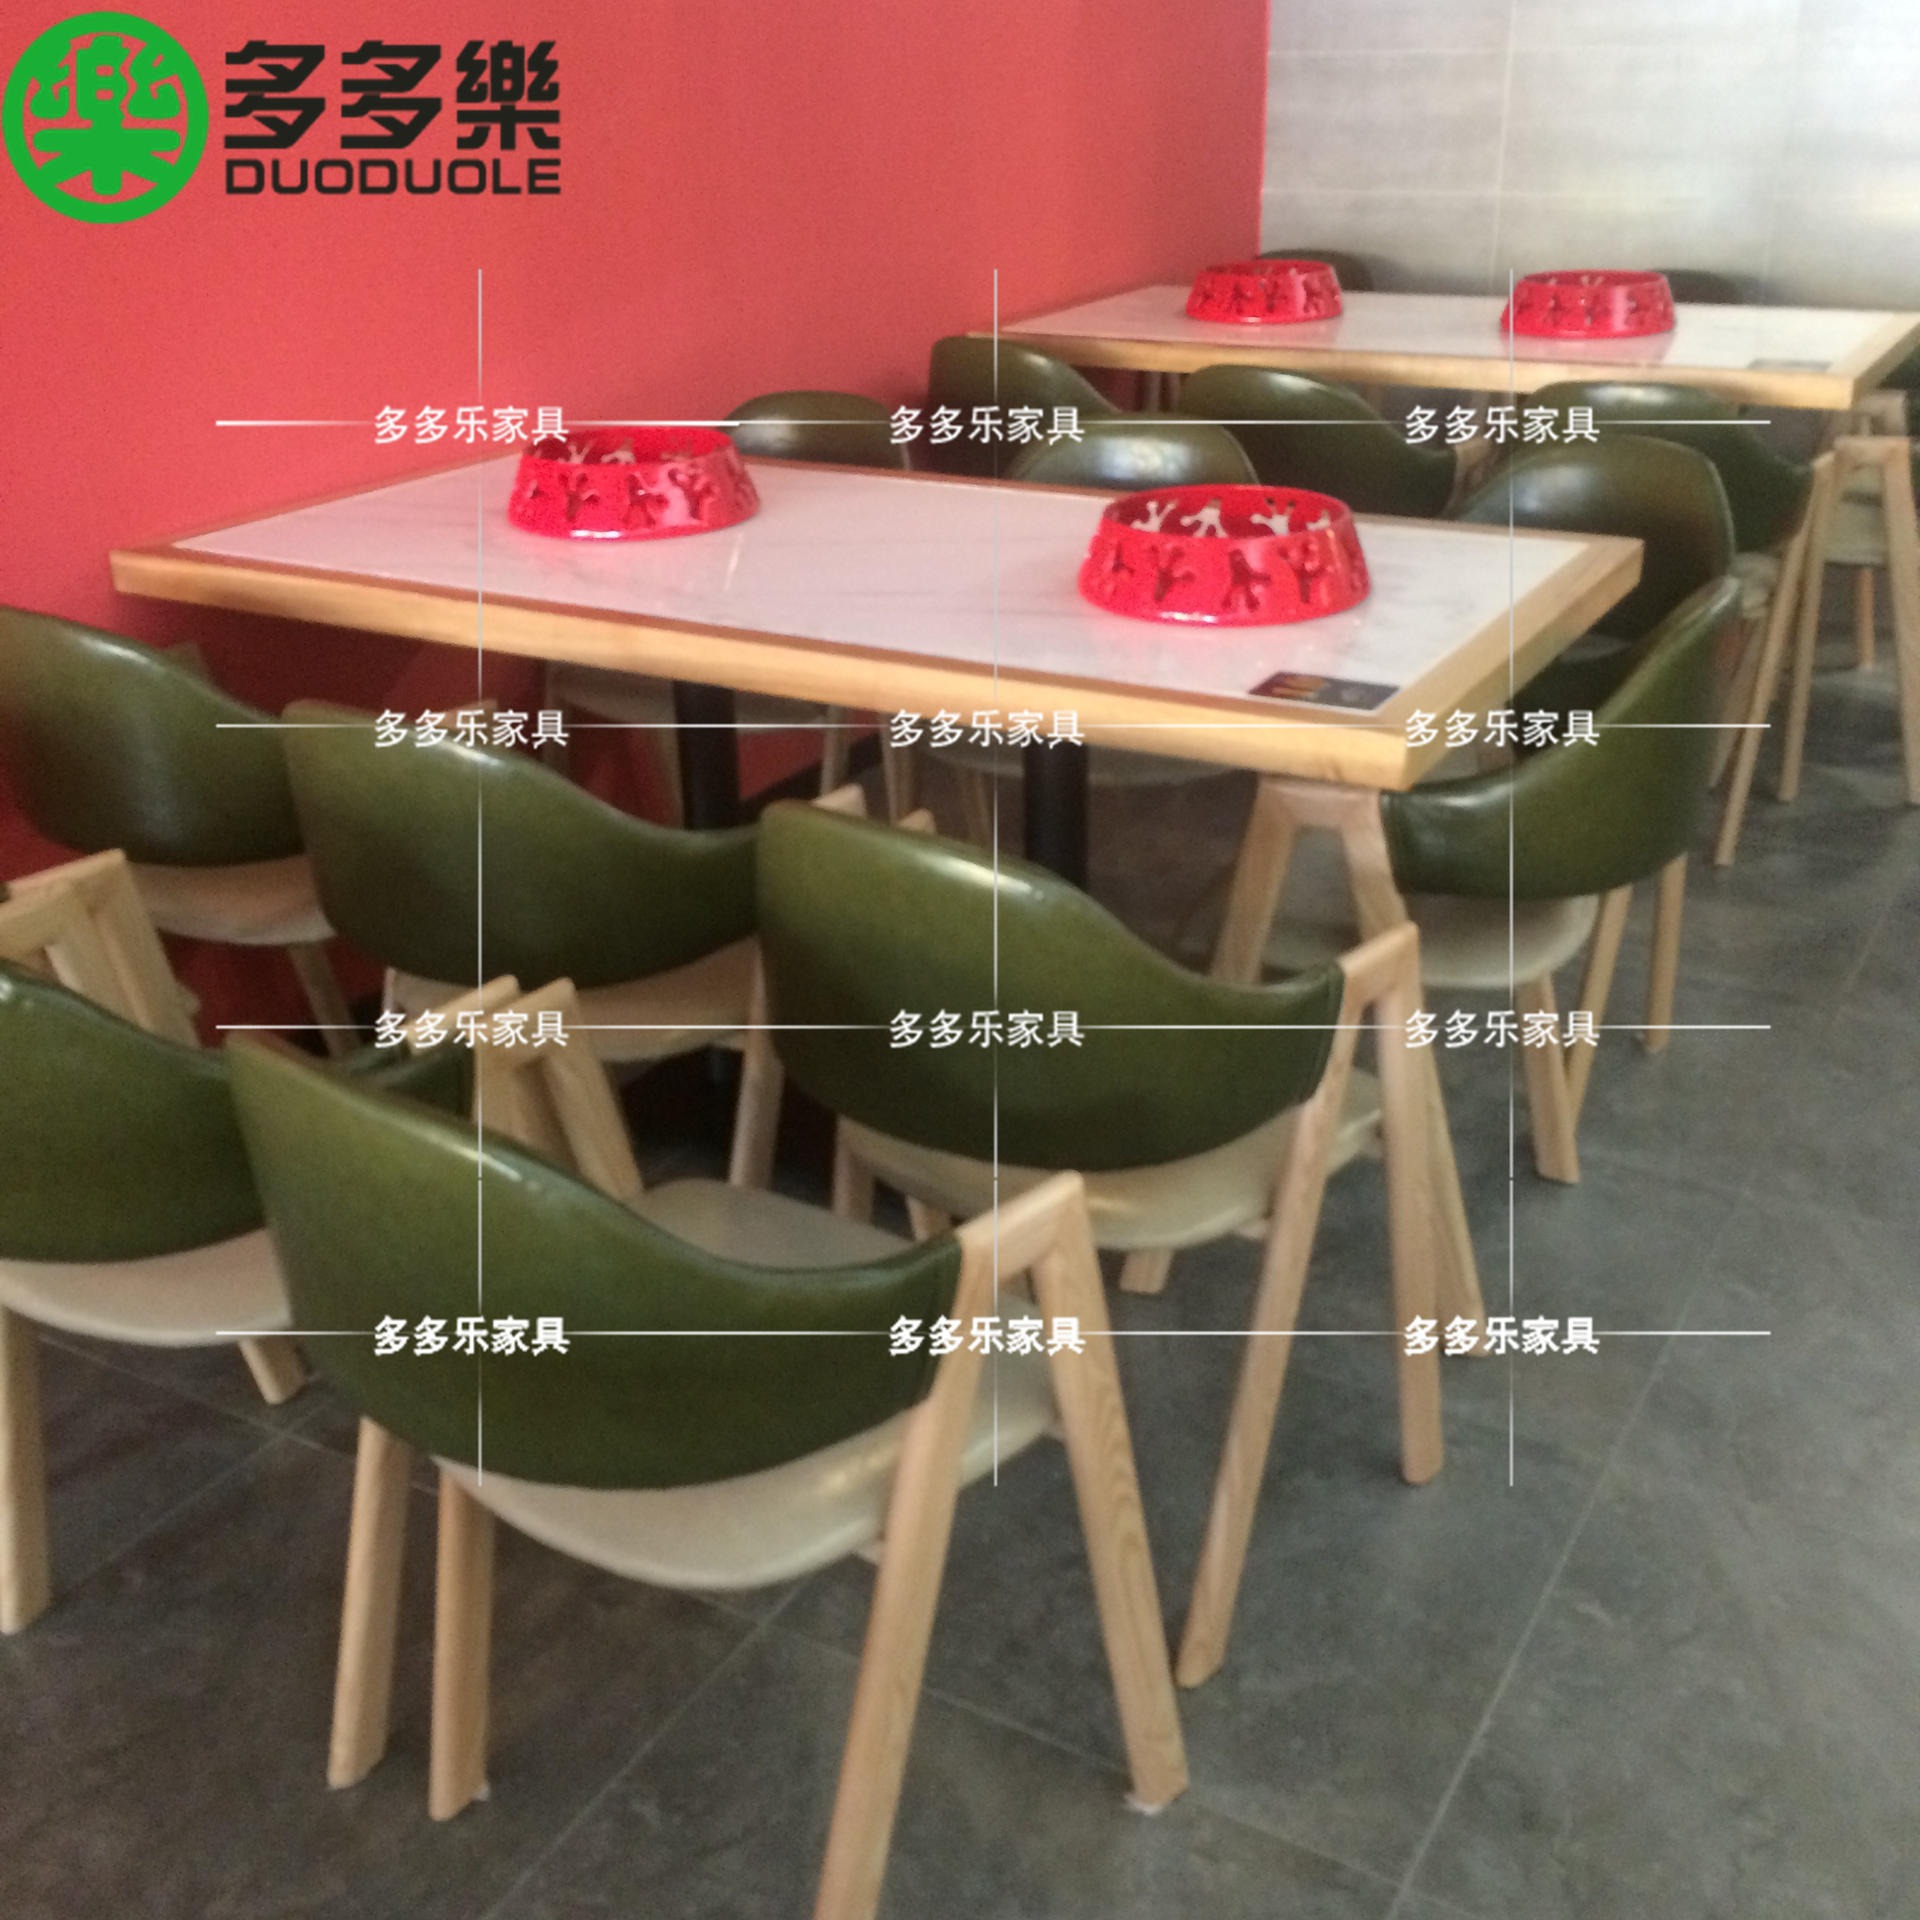 牛蛙餐厅餐桌餐椅 餐饮店餐饮家具定制 实木封边大理石台面餐桌6